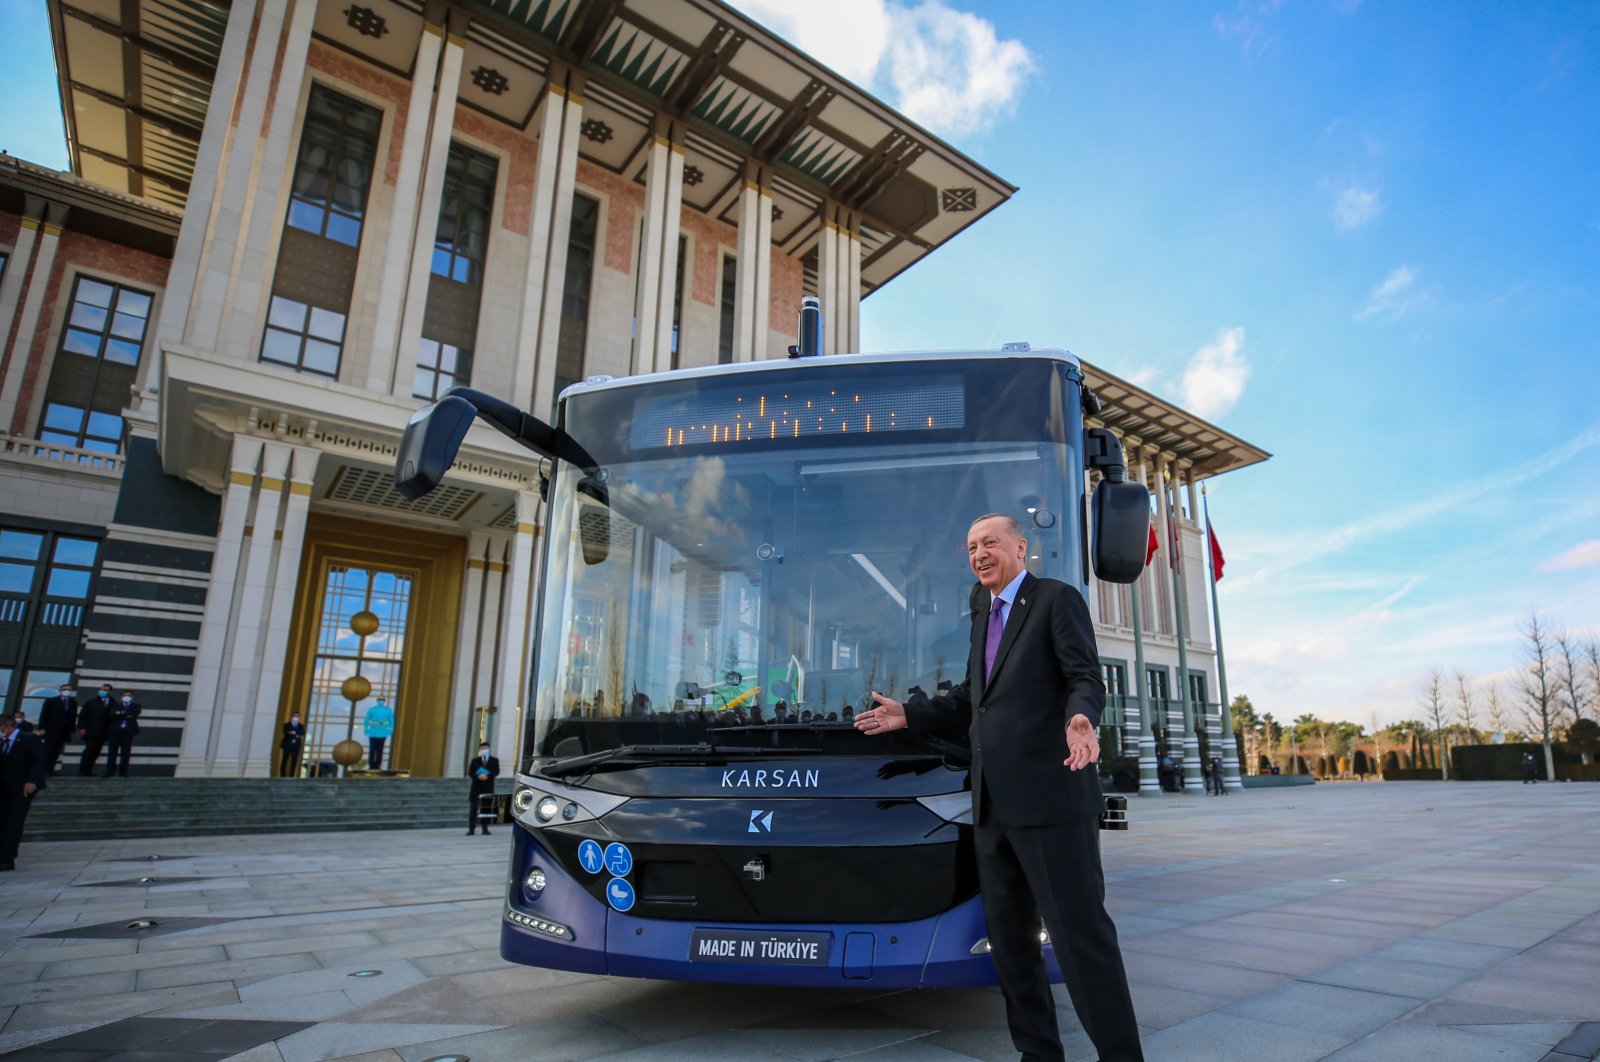 Perusahaan otomotif Turki Karsan mengirimkan 150 bus ke Ukraina